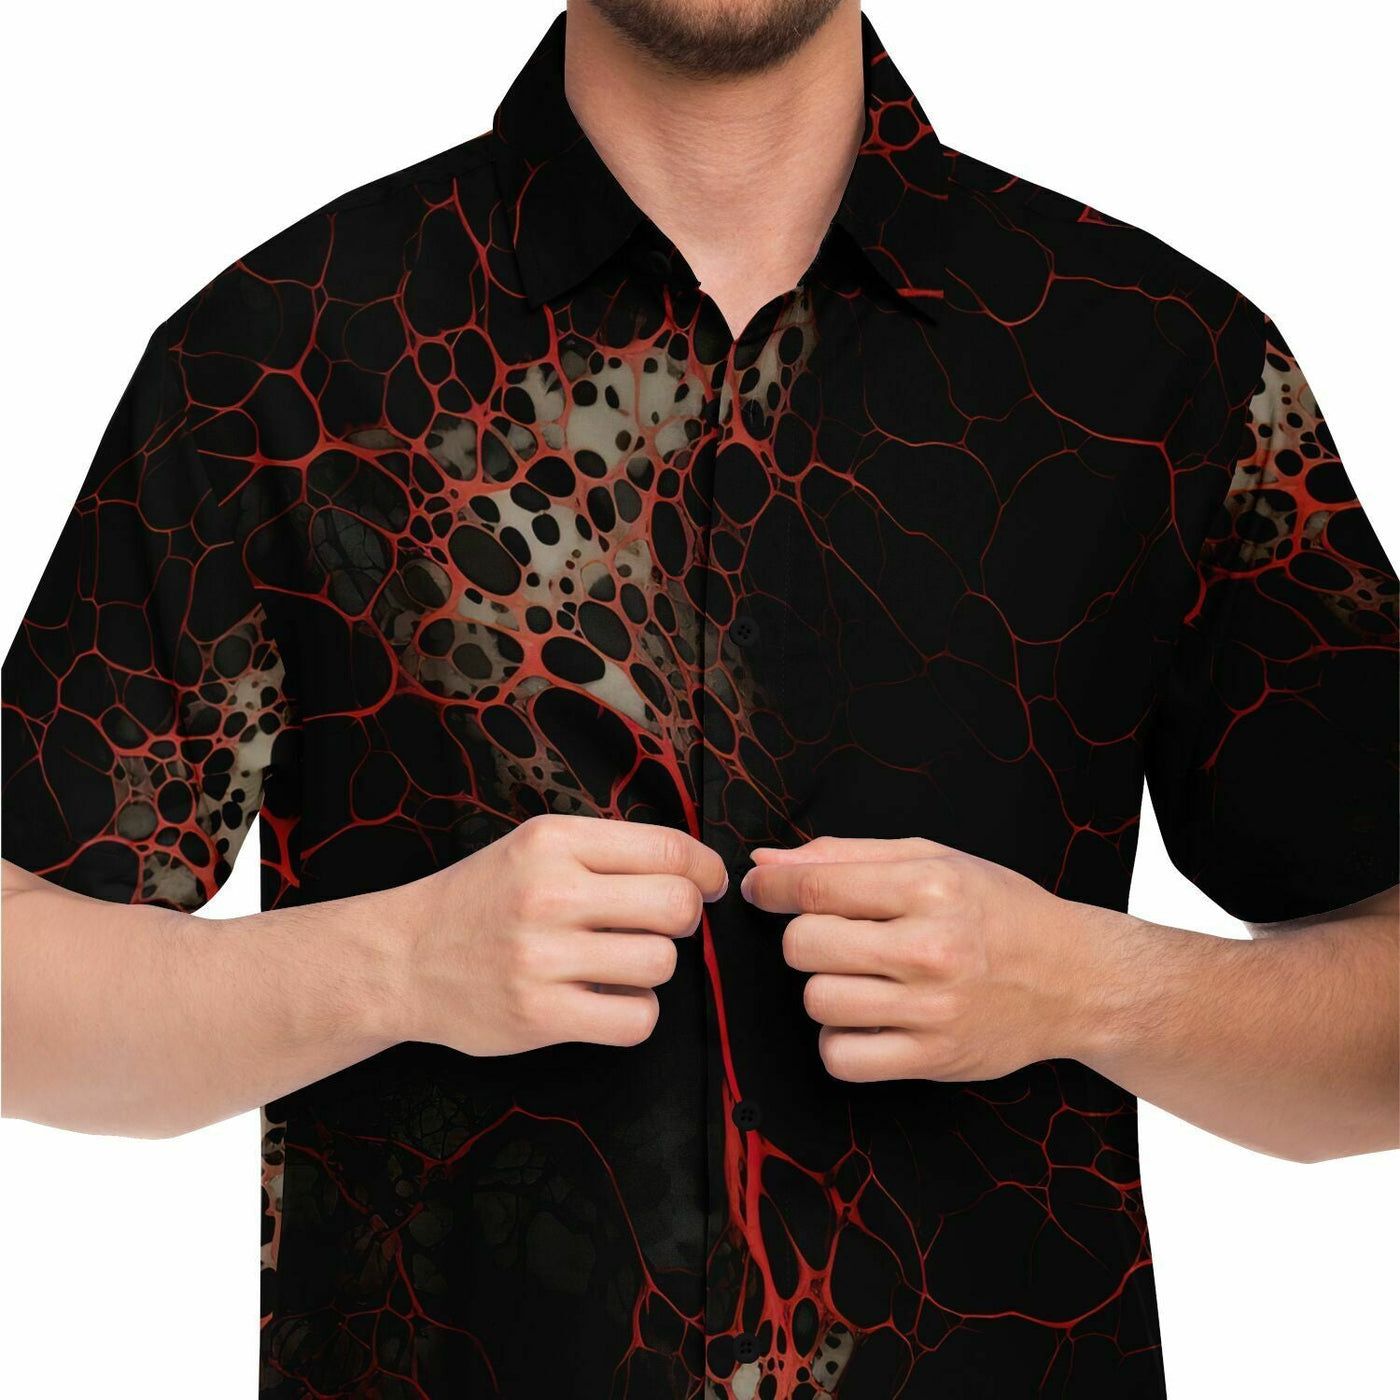 Suminagashi Art Style Creepy Red Splatter Short Sleeve Shirt